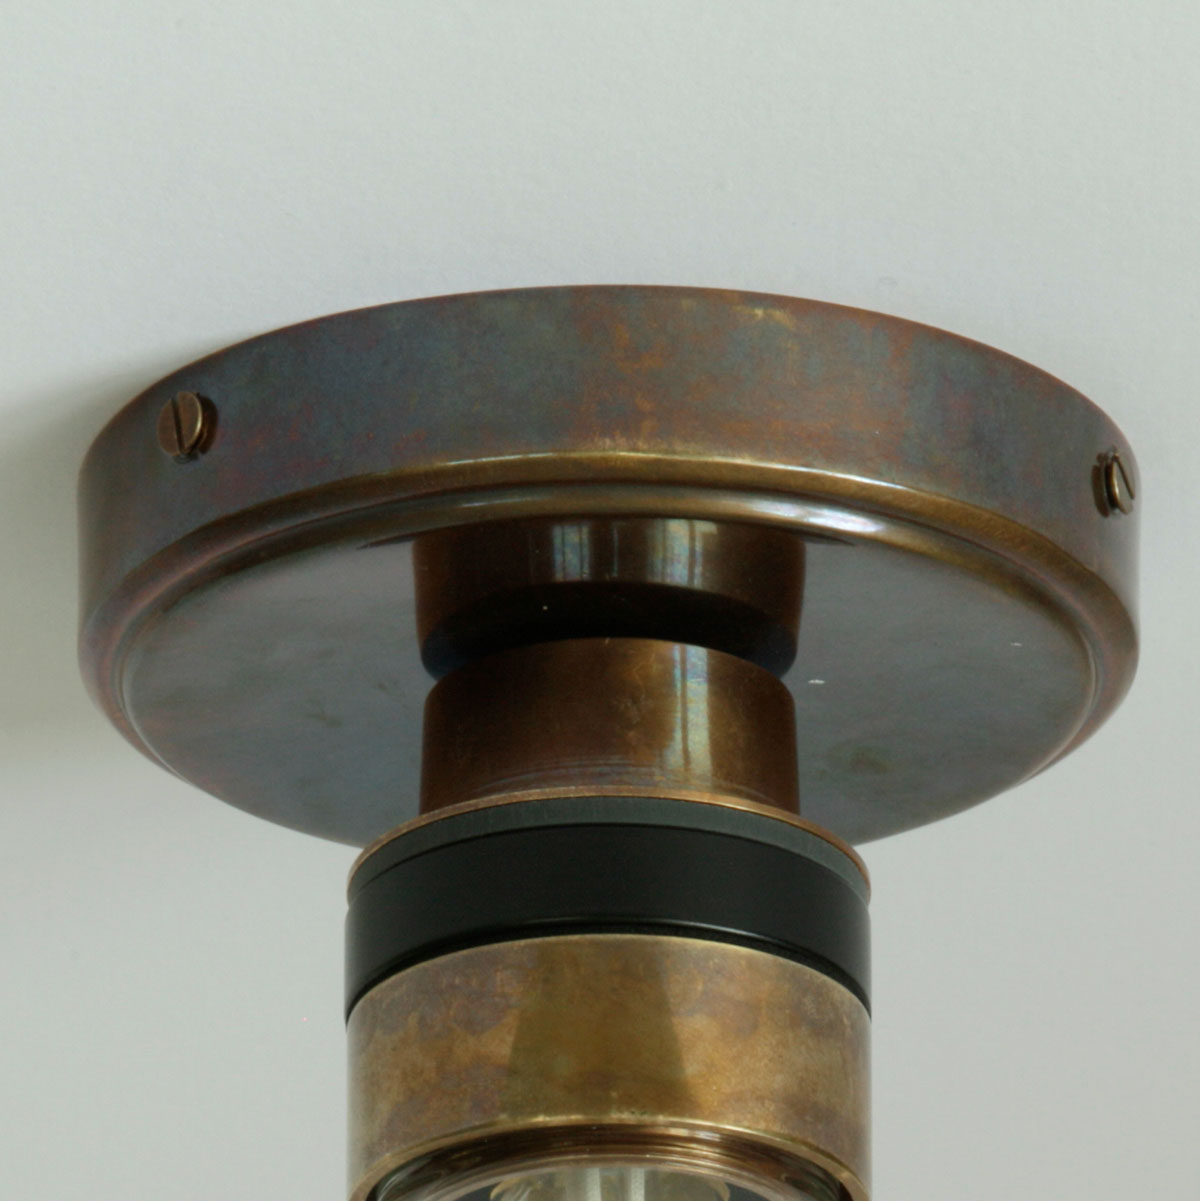 Bad-Deckenlampe mit kleinem Glas-Zylinder (klar oder prismatisch), IP65: Alt-Messing patiniert